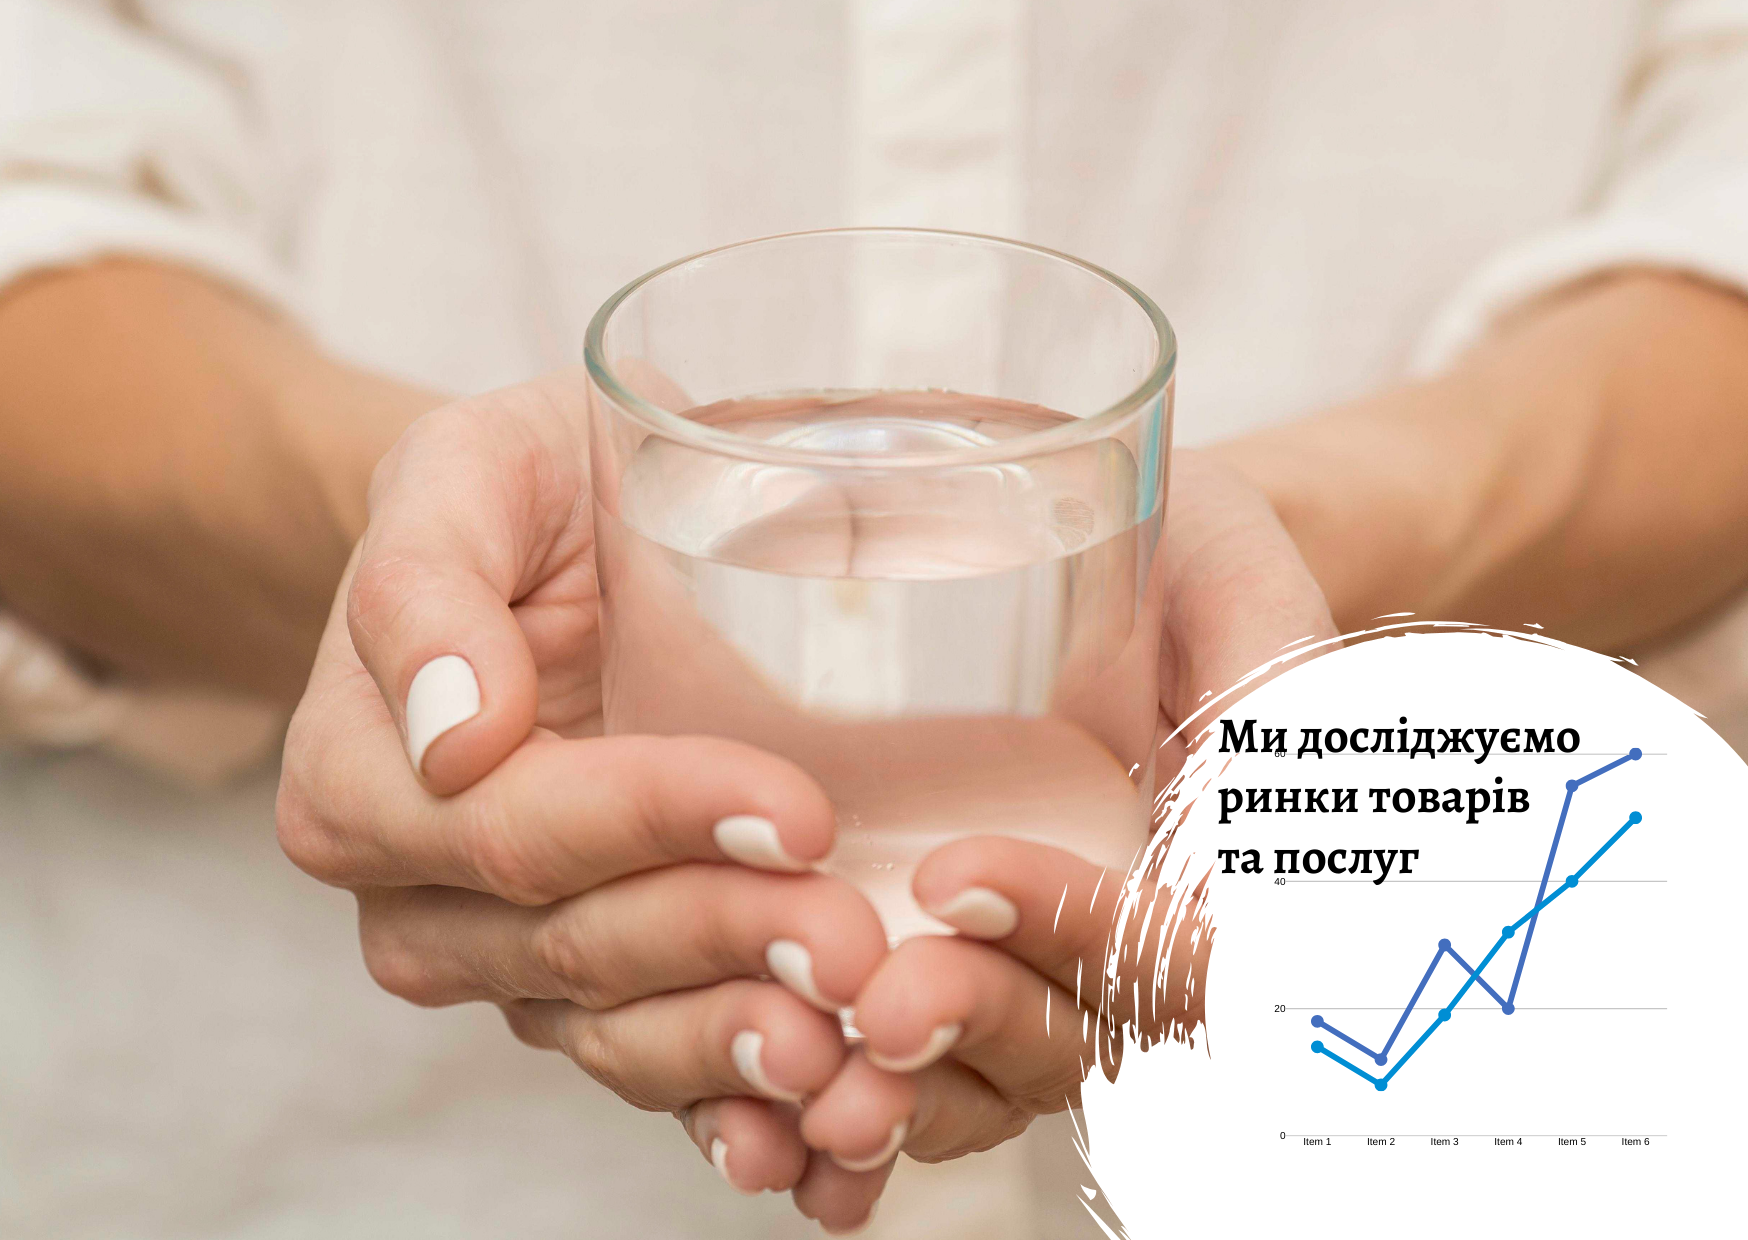 Якість питної води в Кіровоградській та Миколаївській областях – опитування Pro-Consulting